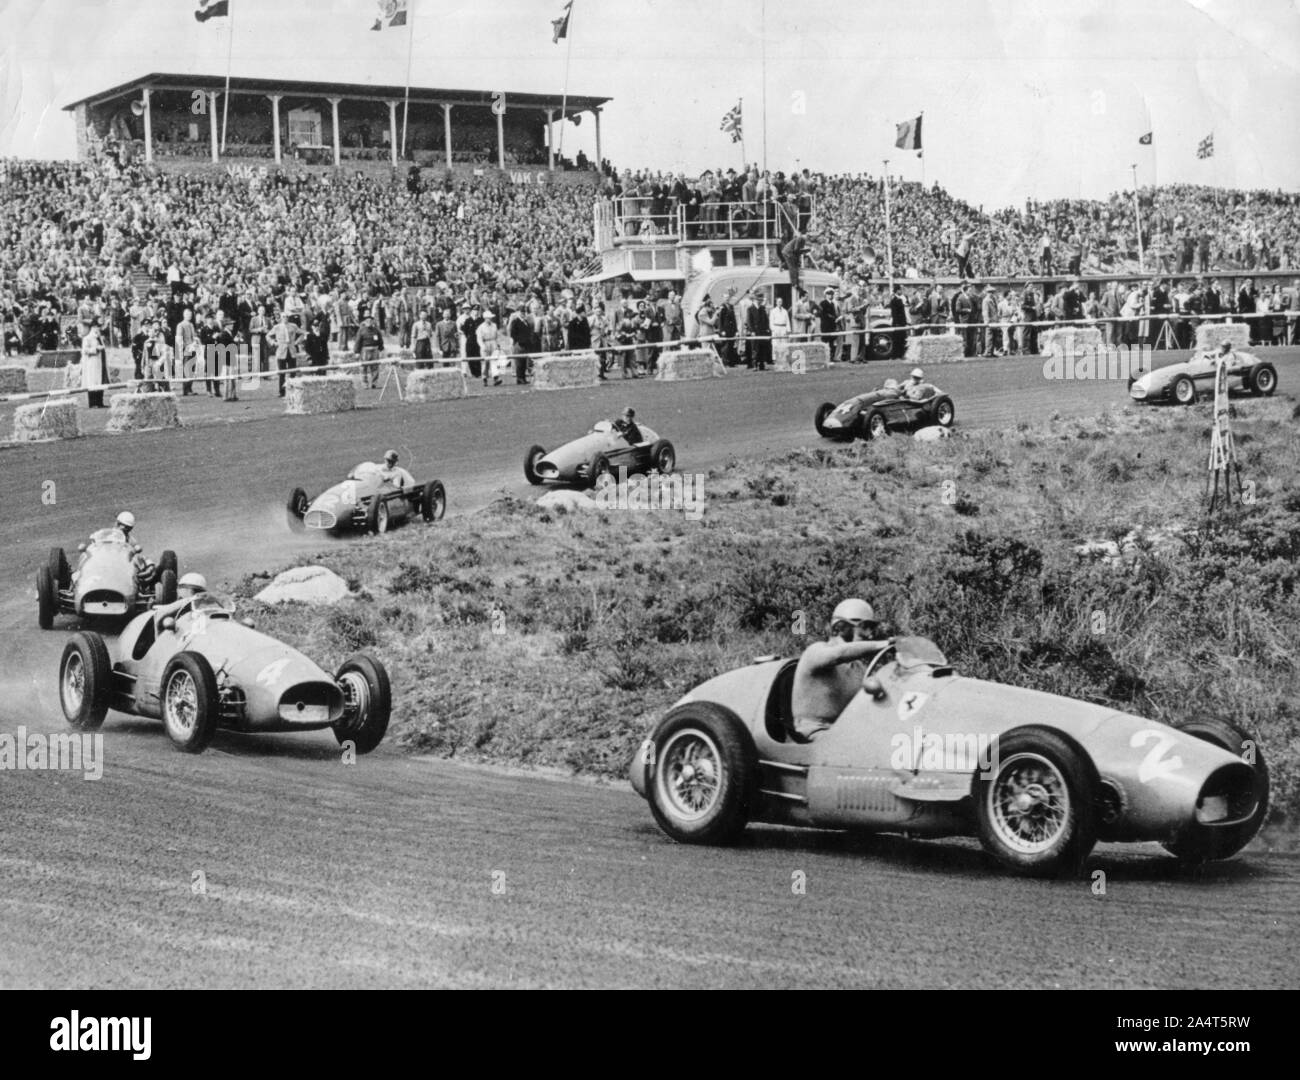 1953 Dutch Grand Prix, Ascari leads in Ferrari. Stock Photo